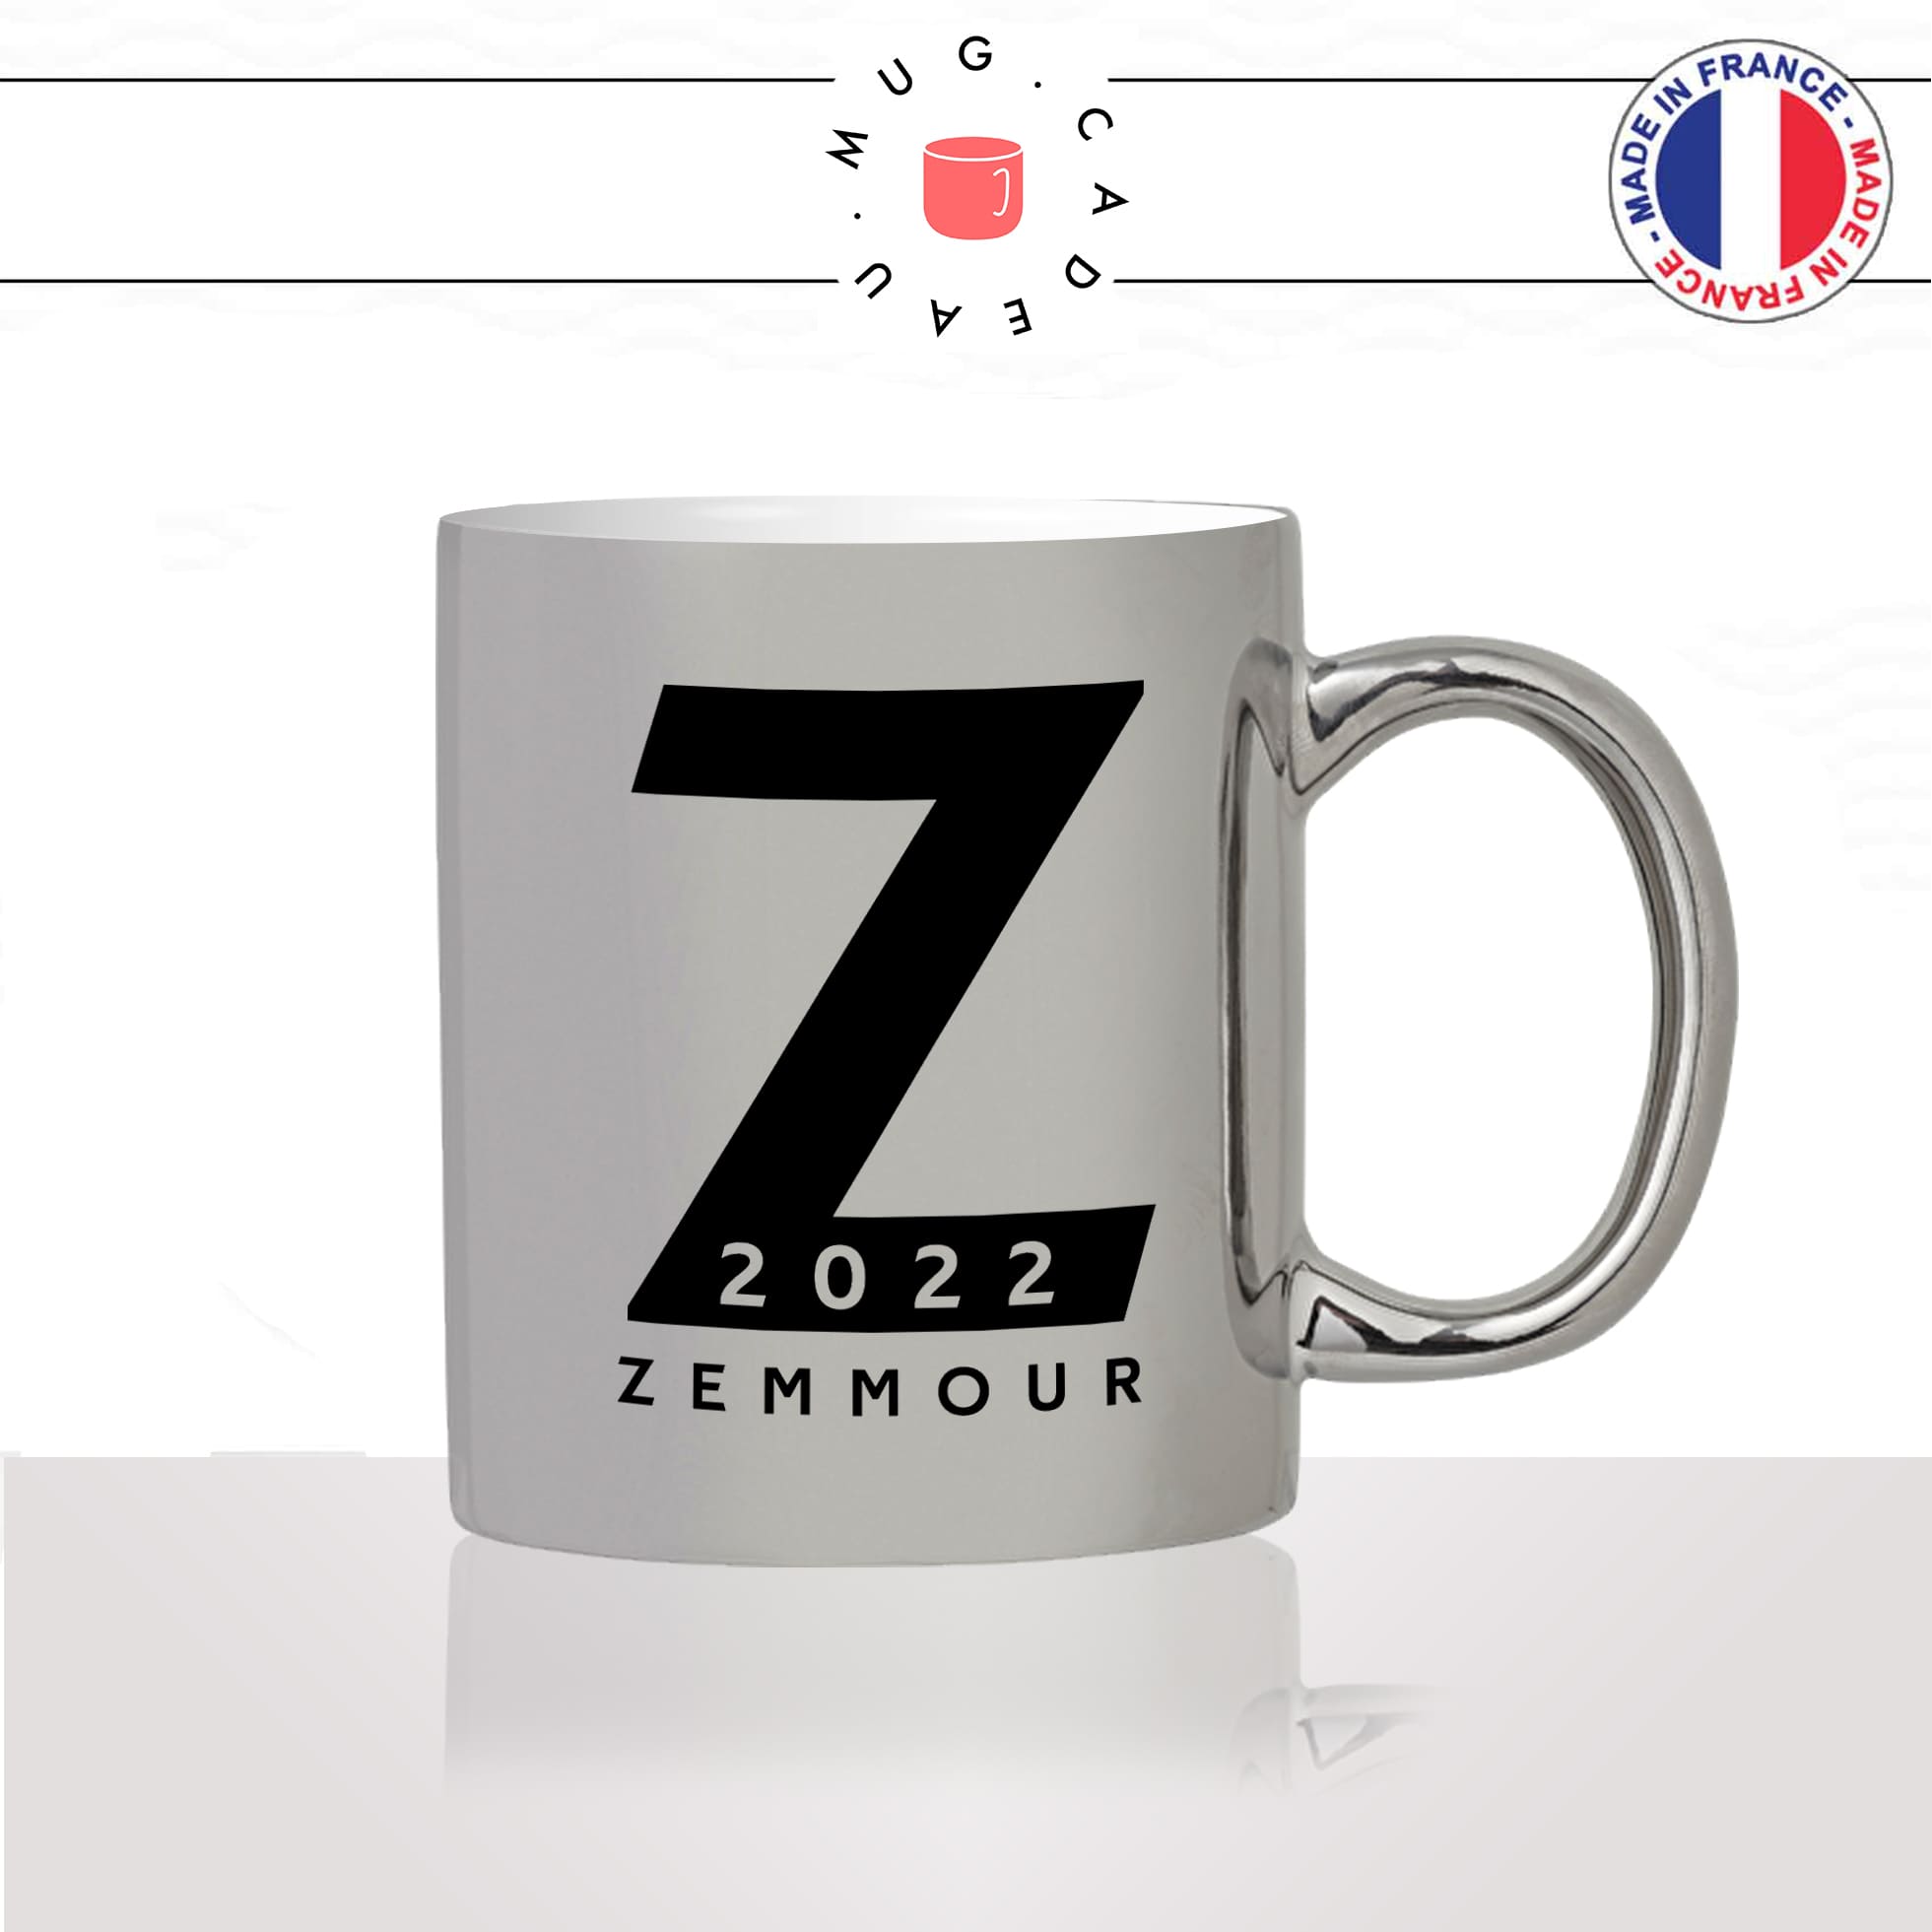 mug-tasse-argent-argenté-silver-gris-Z-zemmour-eric-2022-futur-president-campagne-presidentielle-candidat-elections-politique-idée-cadeau-original2